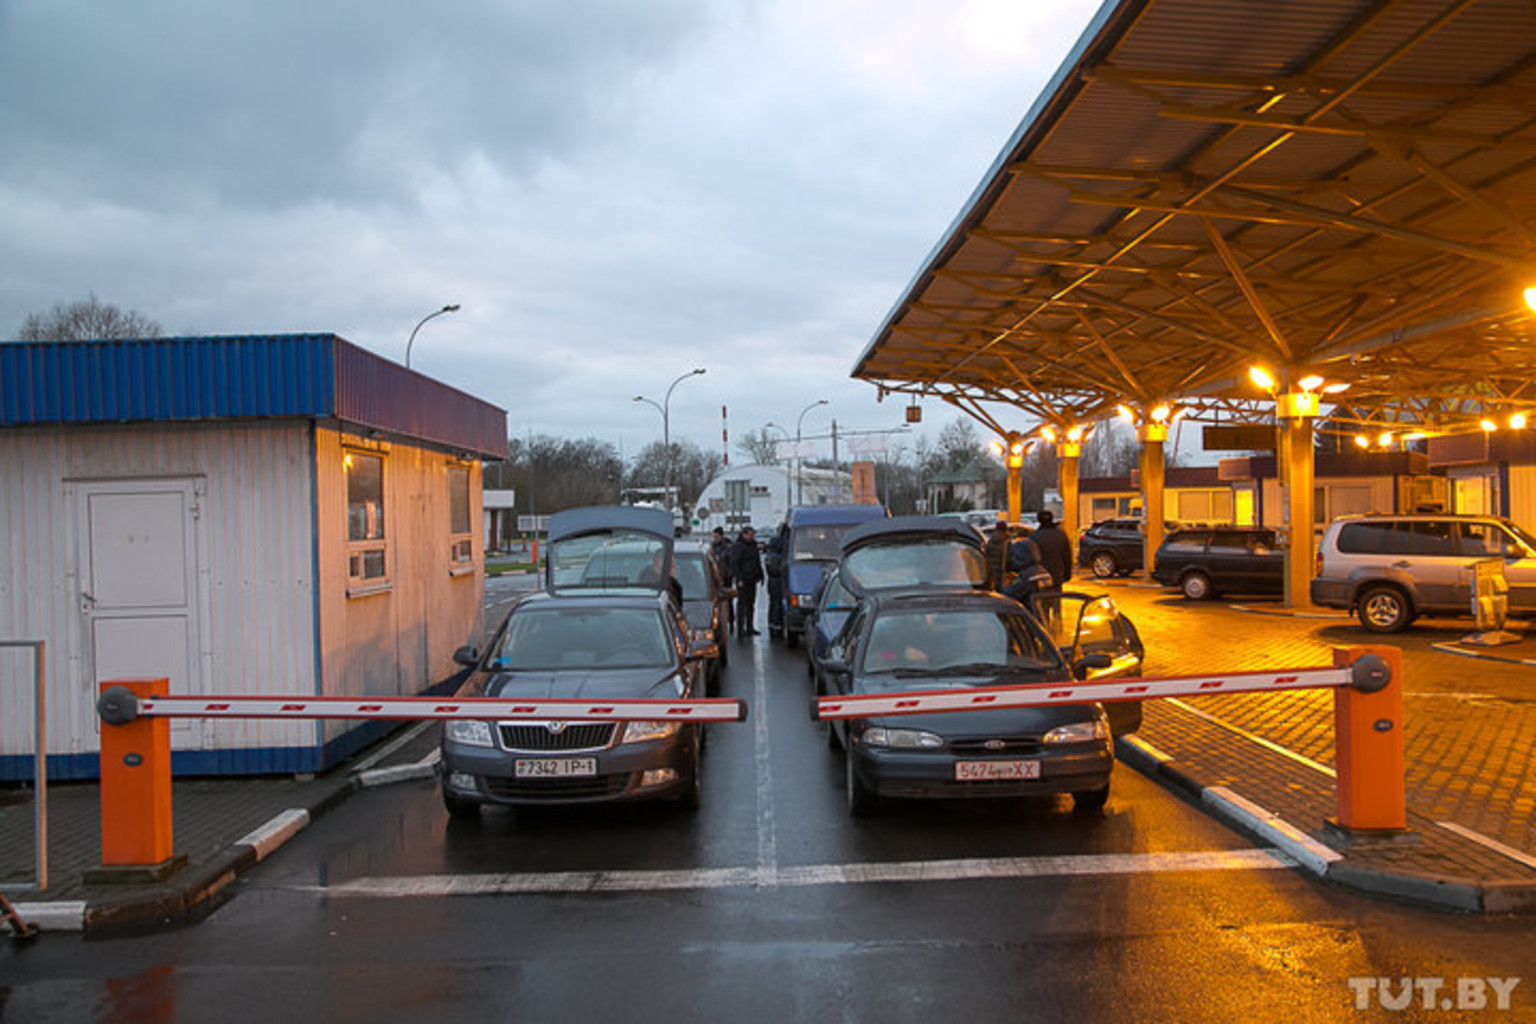 Пересечение эстонской границы на автомобиле: Въезд на территорию Эстонии разрешён в исключительных случаях